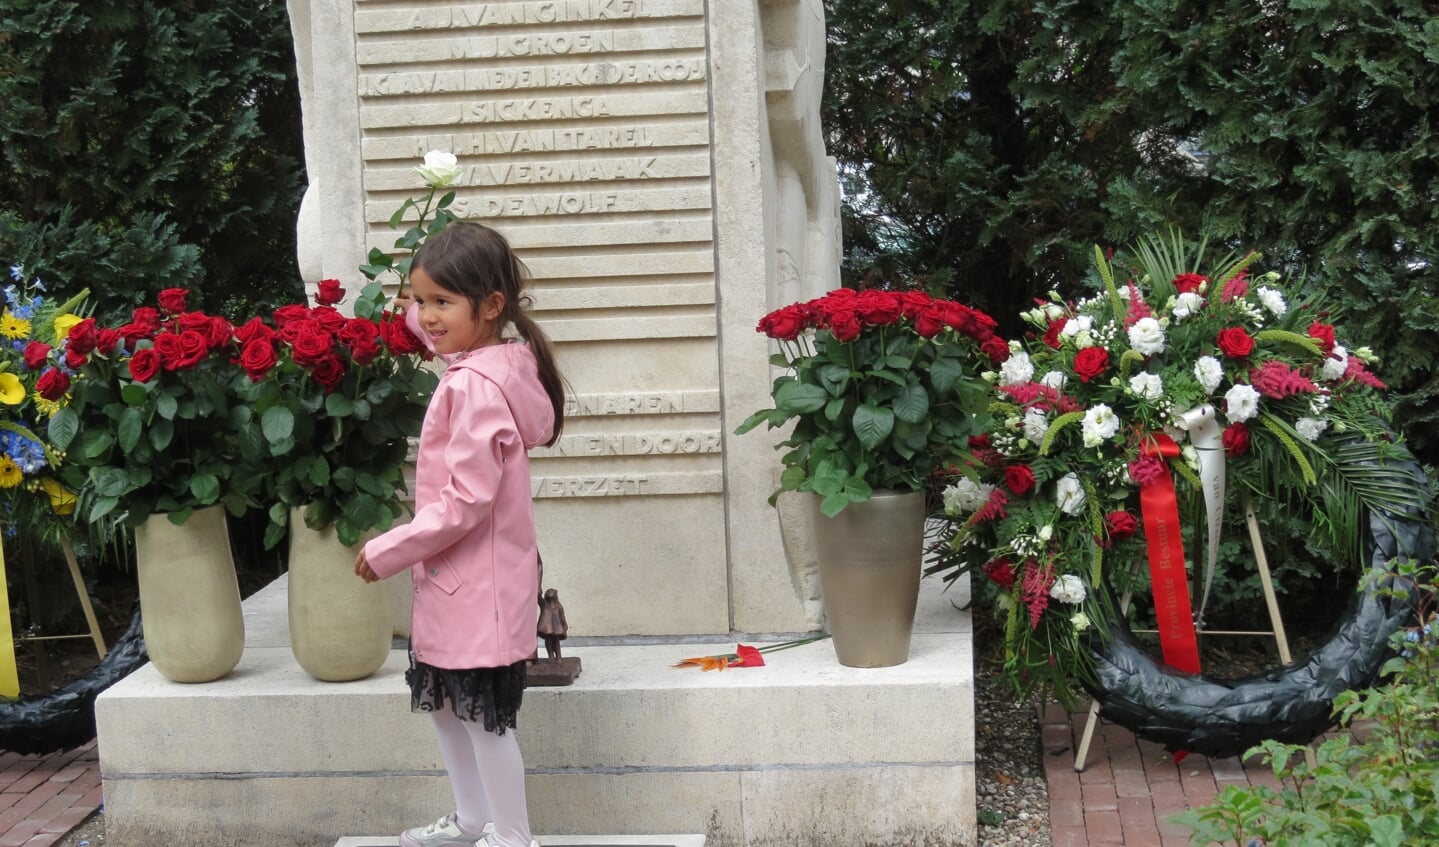 De vijfenhalfjarige Jasmijn van Dijk van de derde generatie plaatst een witte roos tussen de rode rozen. 